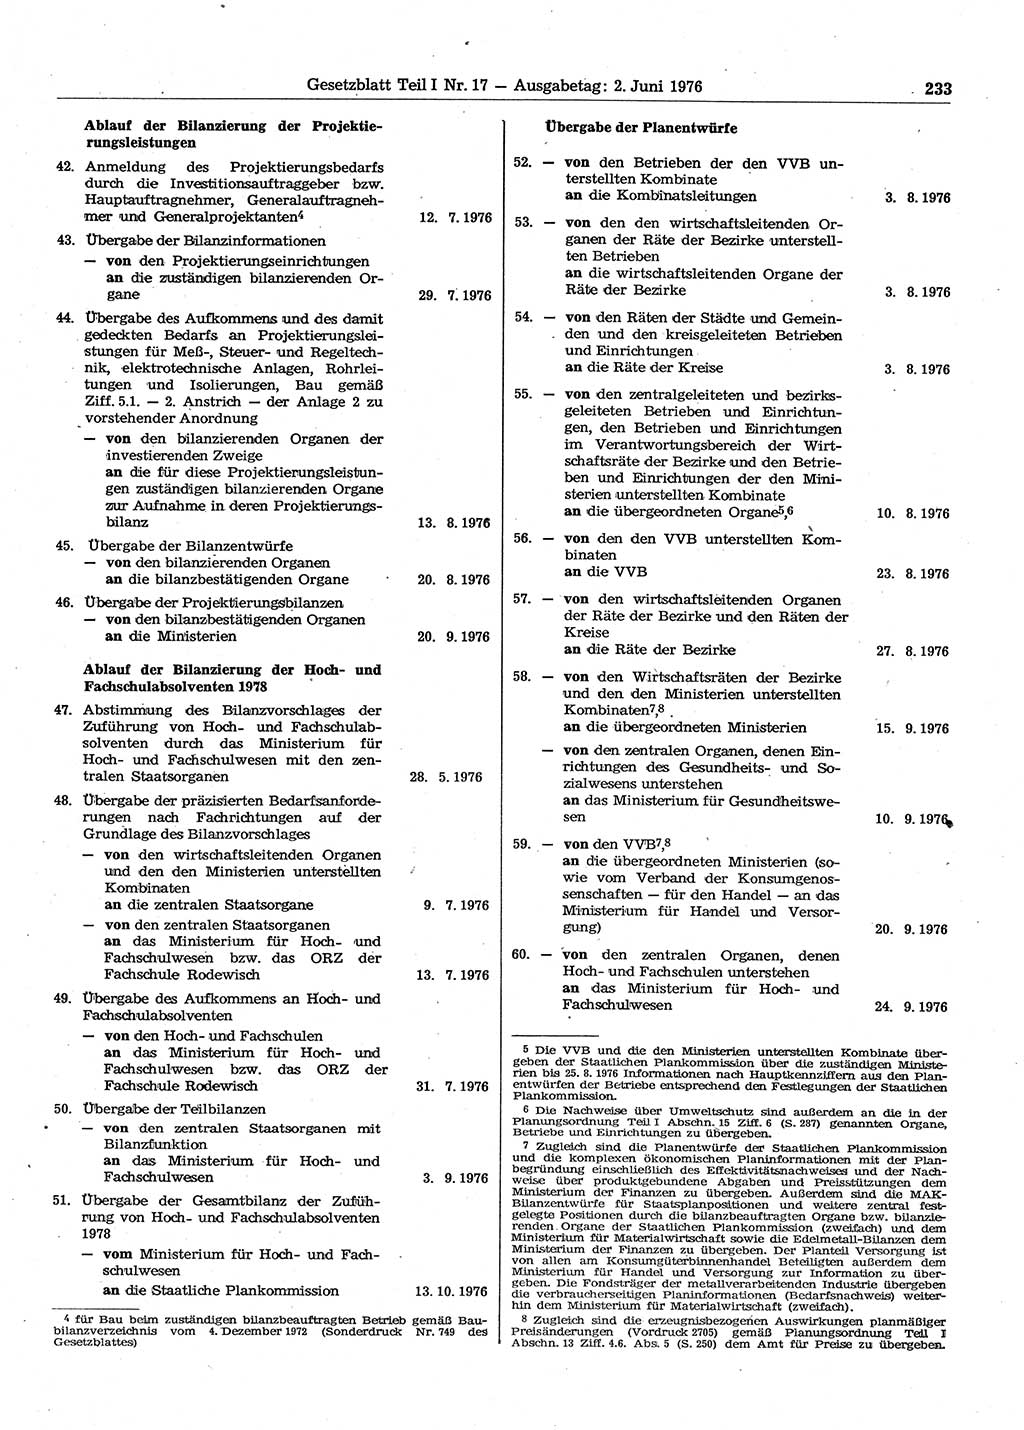 Gesetzblatt (GBl.) der Deutschen Demokratischen Republik (DDR) Teil Ⅰ 1976, Seite 233 (GBl. DDR Ⅰ 1976, S. 233)